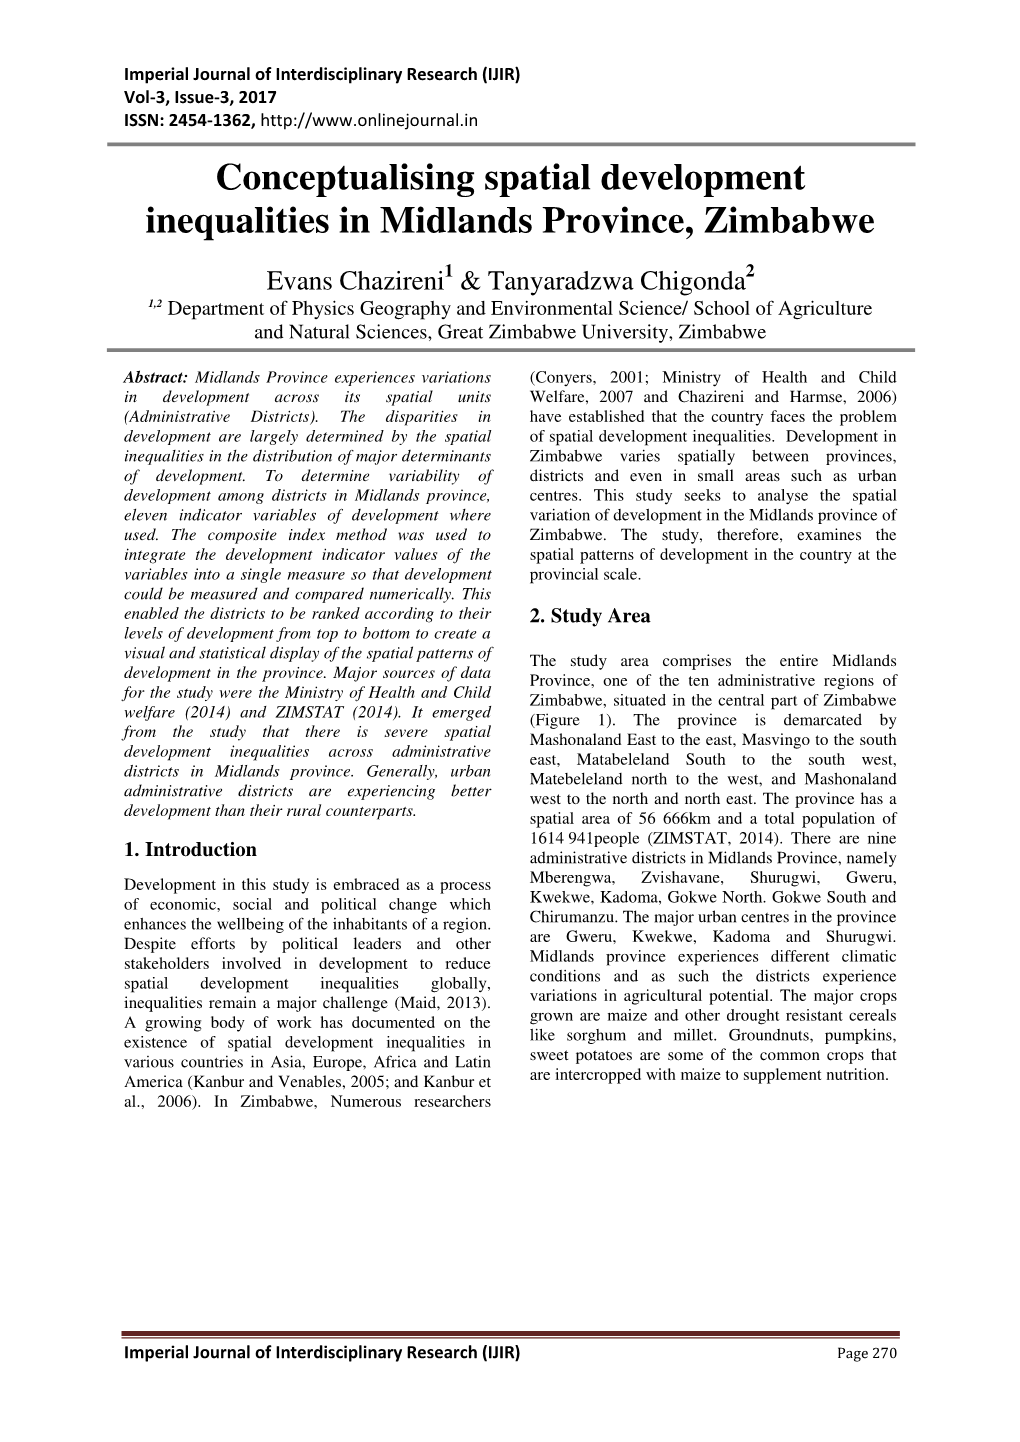 Conceptualising Spatial Development Inequalities in Midlands Province, Zimbabwe